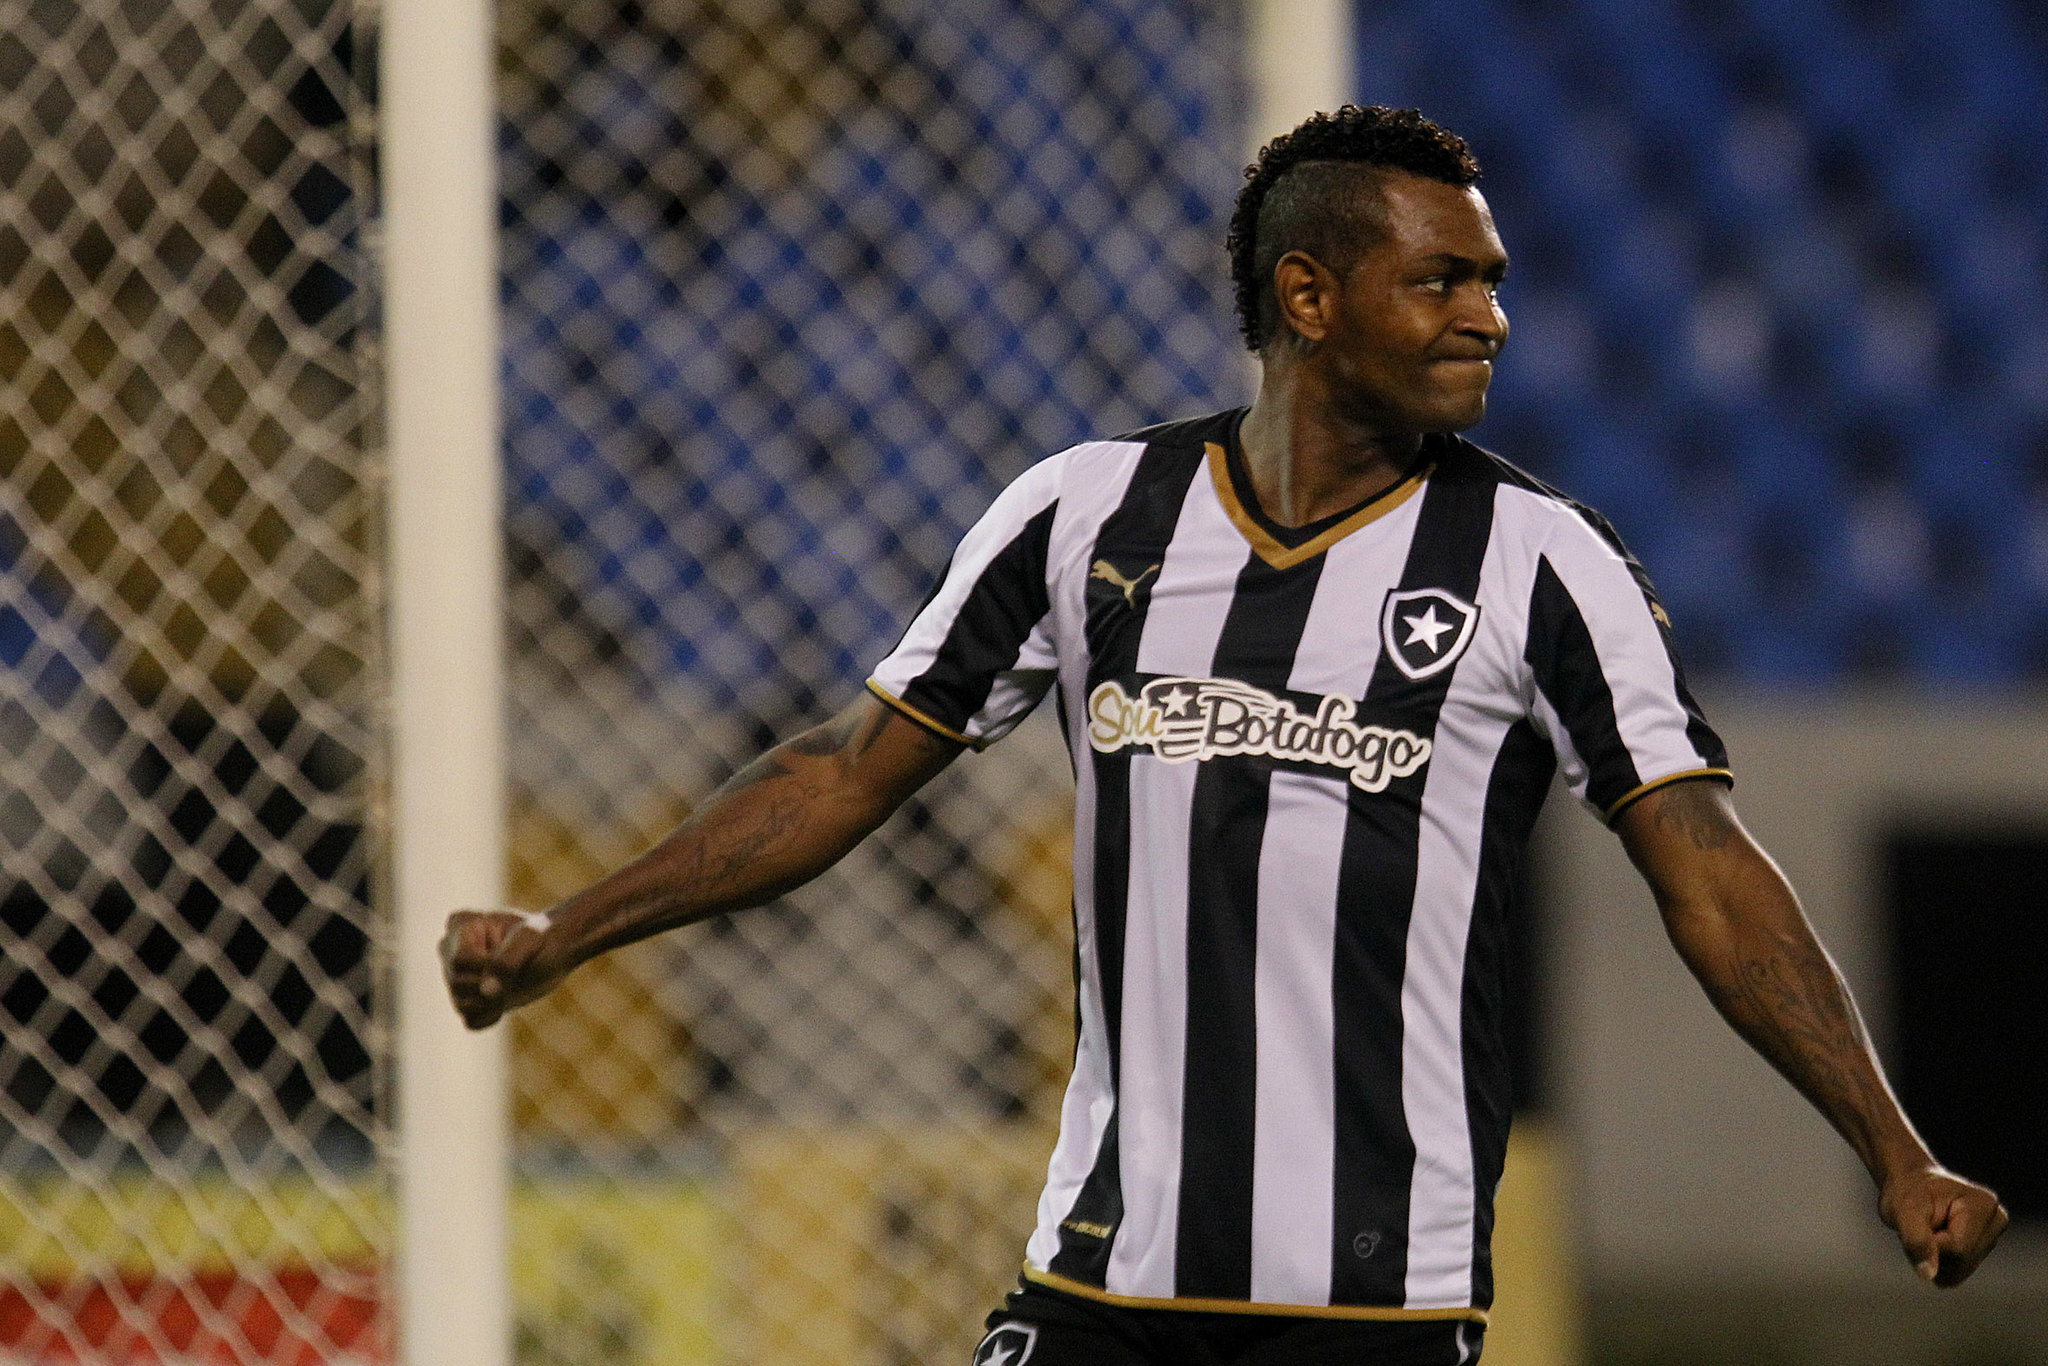 Jobson: ex-Botafogo, o atacante Jobson, aos 33 anos, foi anunciado pelo Sete de Setembro e vai disputar o Campeonato Pernambucano em 2022.